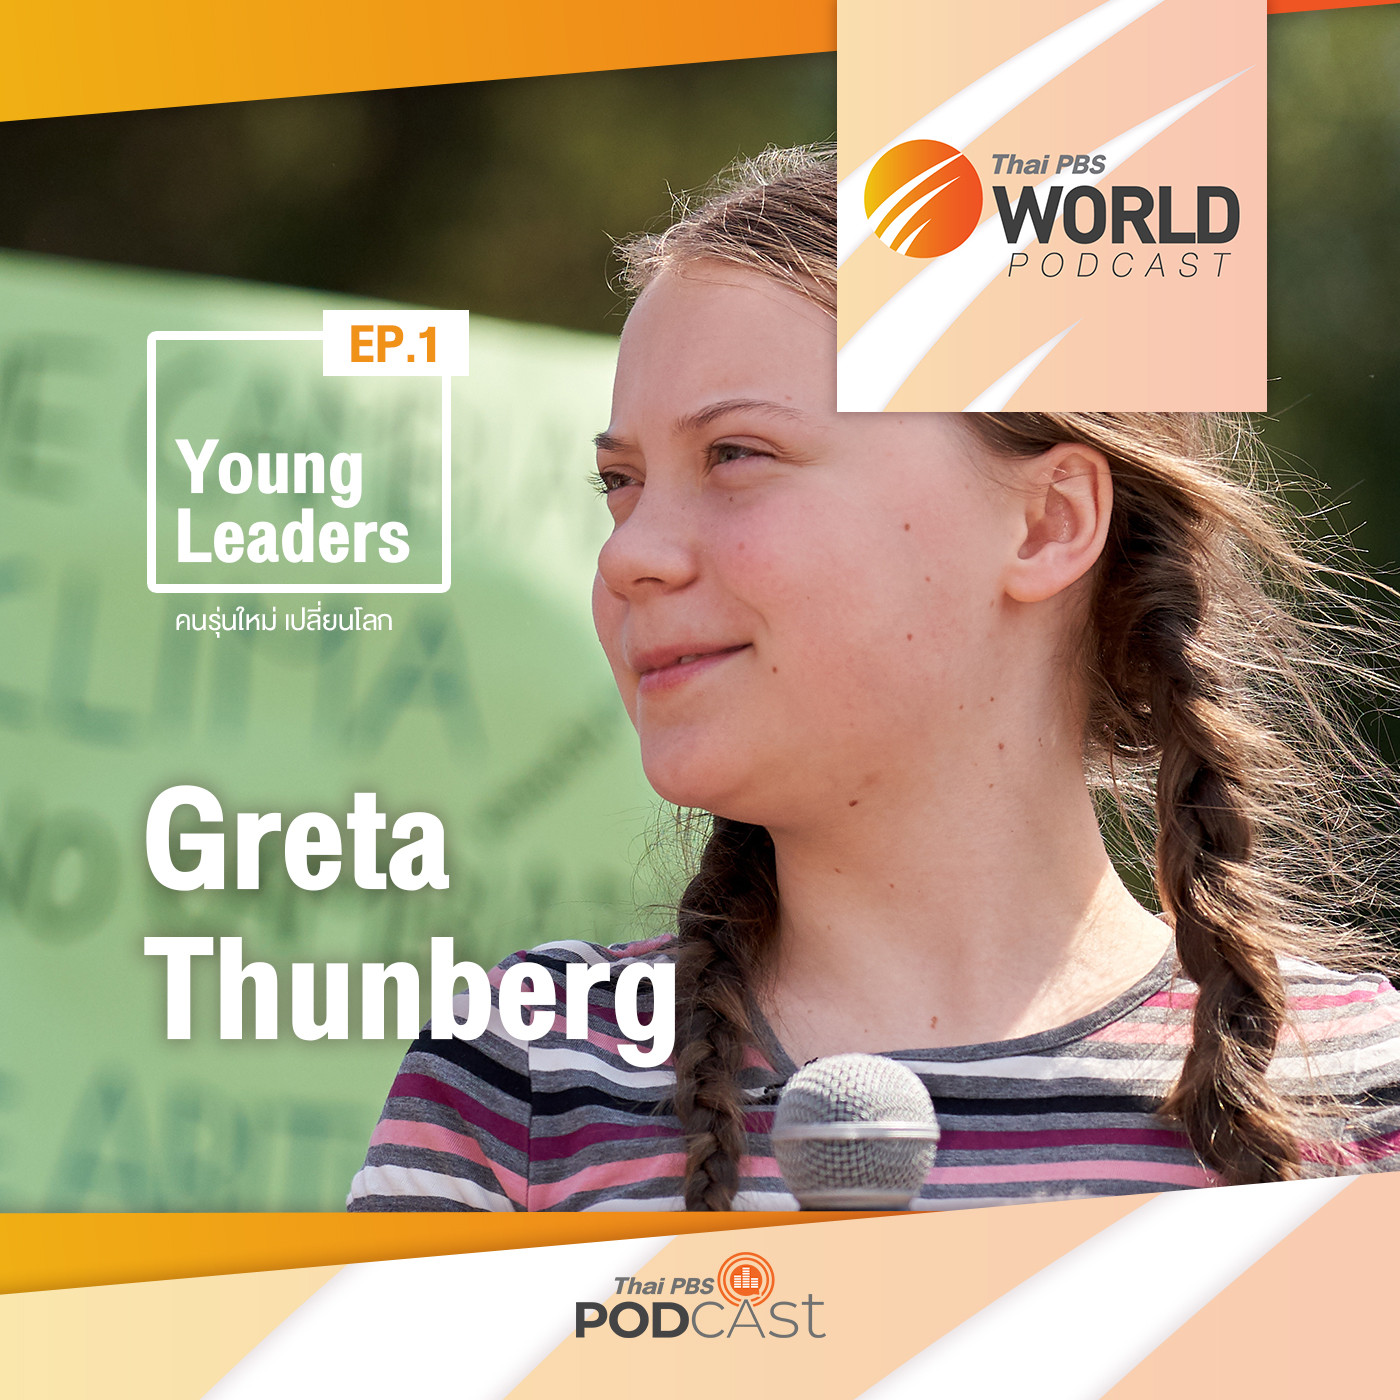 EP. 1: "เกรต้า ธันเบิร์ก" เยาวชนผู้สร้างการตระหนักถึงการเปลี่ยนแปลงสภาพภูมิอากาศโลก